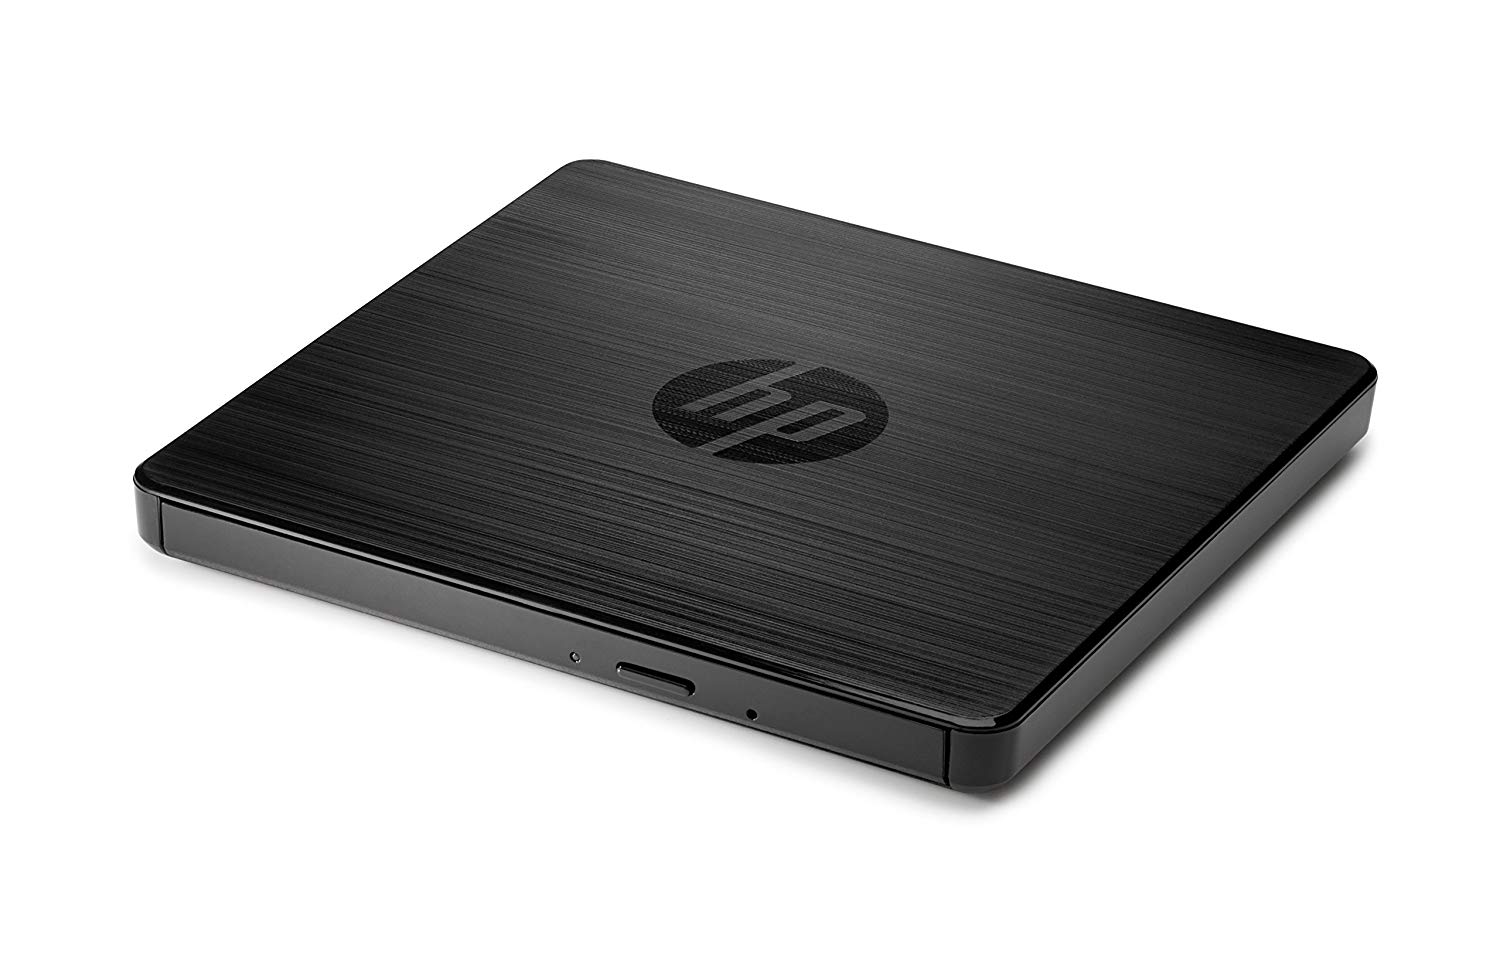 Options/Hewlett-packard: HP, USB, EXTERNAL, DVDRW, DRIVE, 